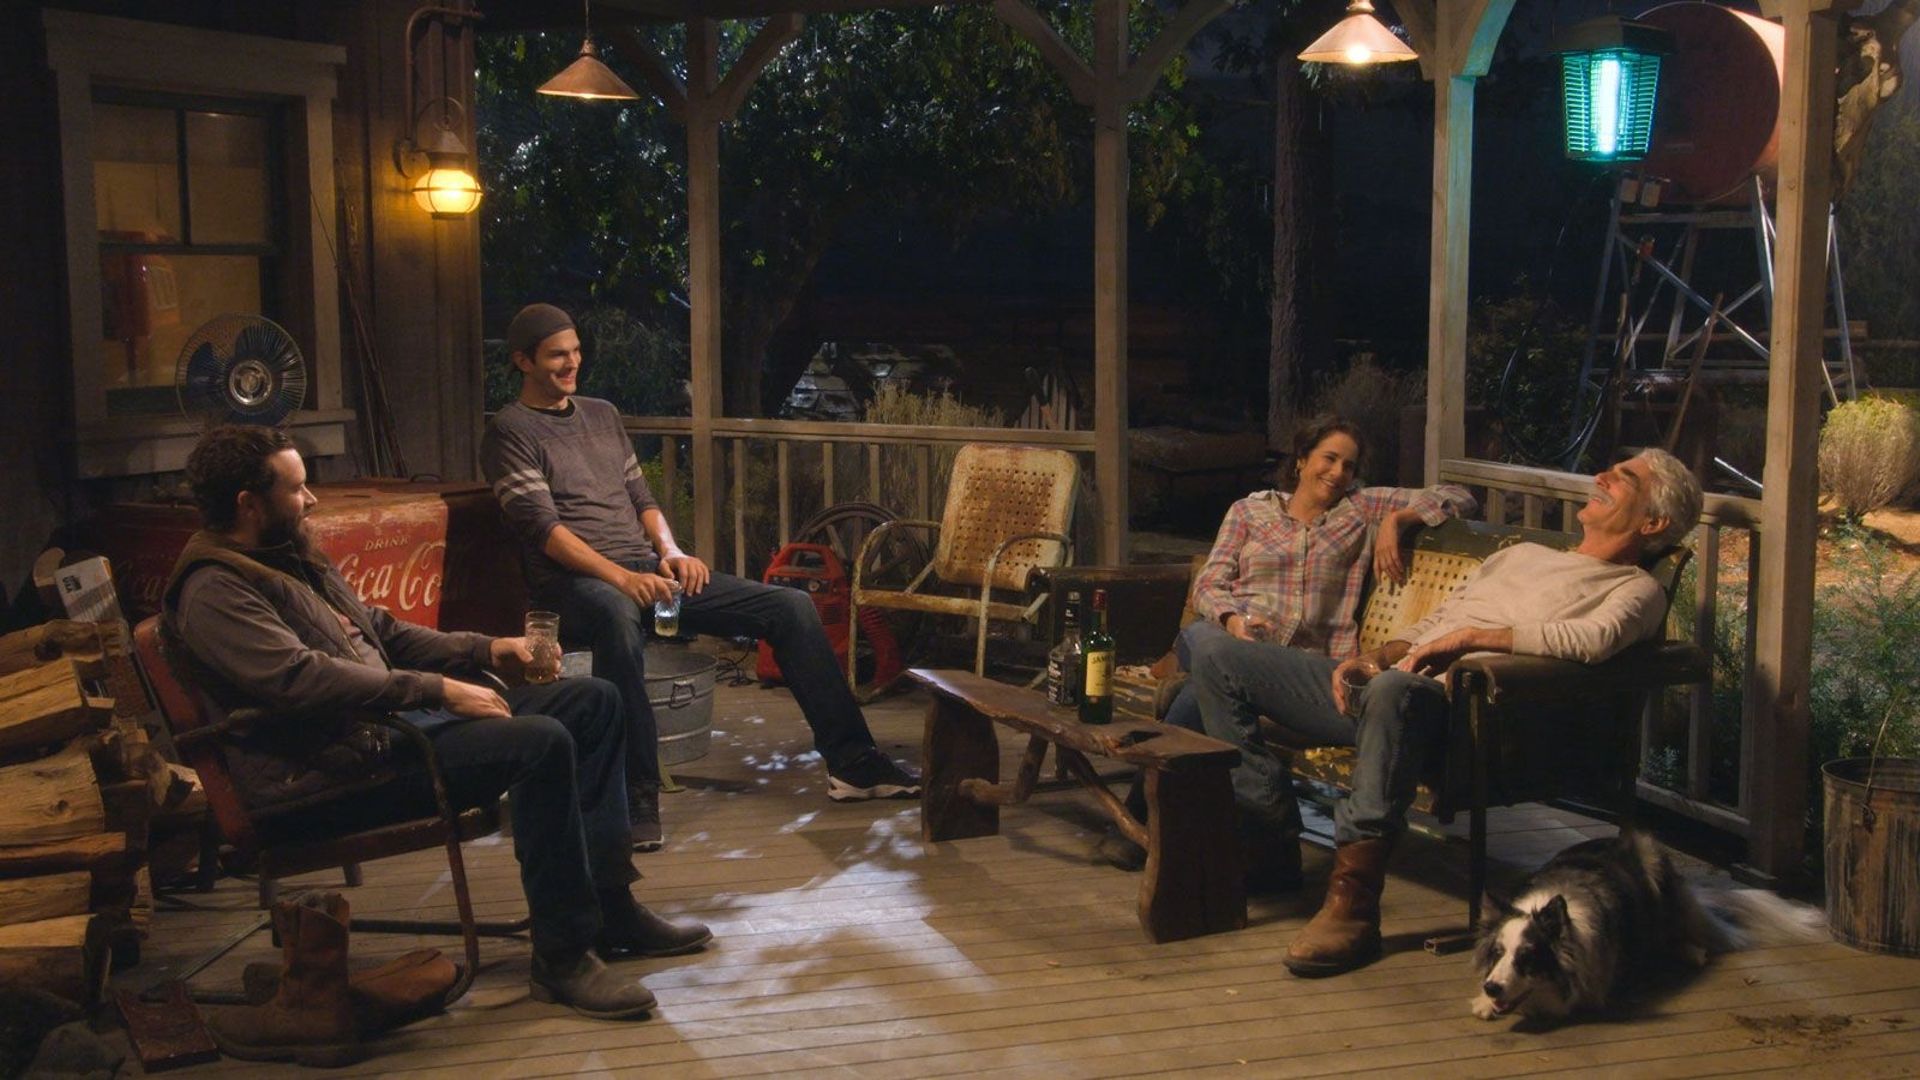 "The Ranch", avec Ashton Kutcher, arrivera courant 2016 sur Netflix.